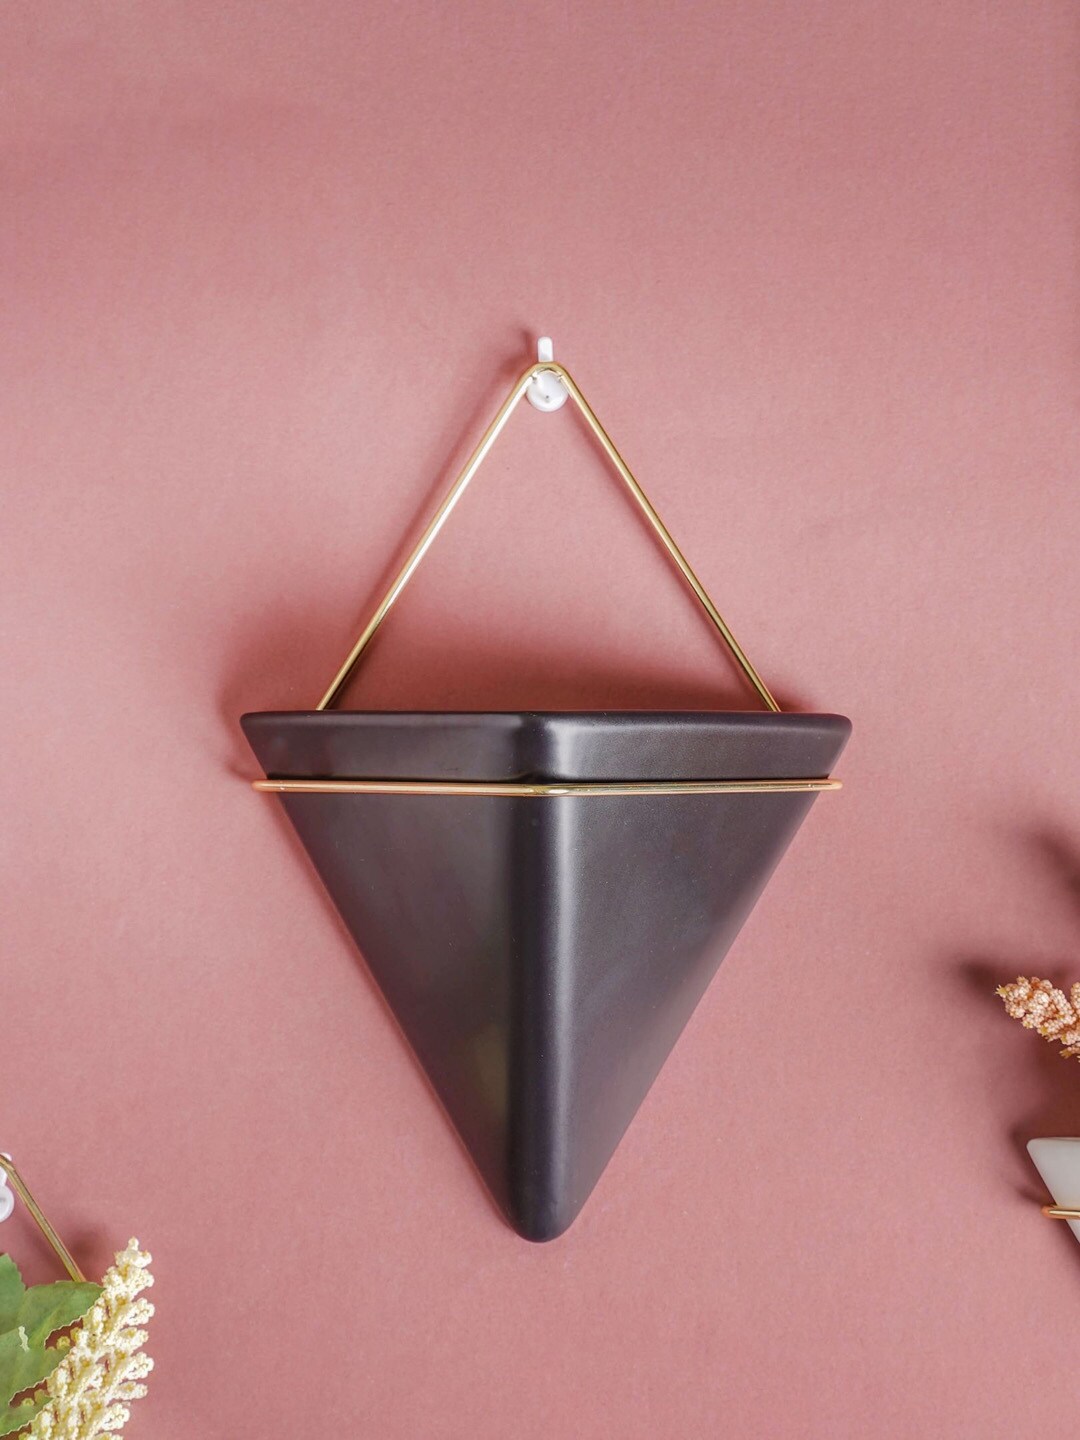 Nestasia Black & Gold-Toned Triangular Ceramic Pot With Holder Price in India